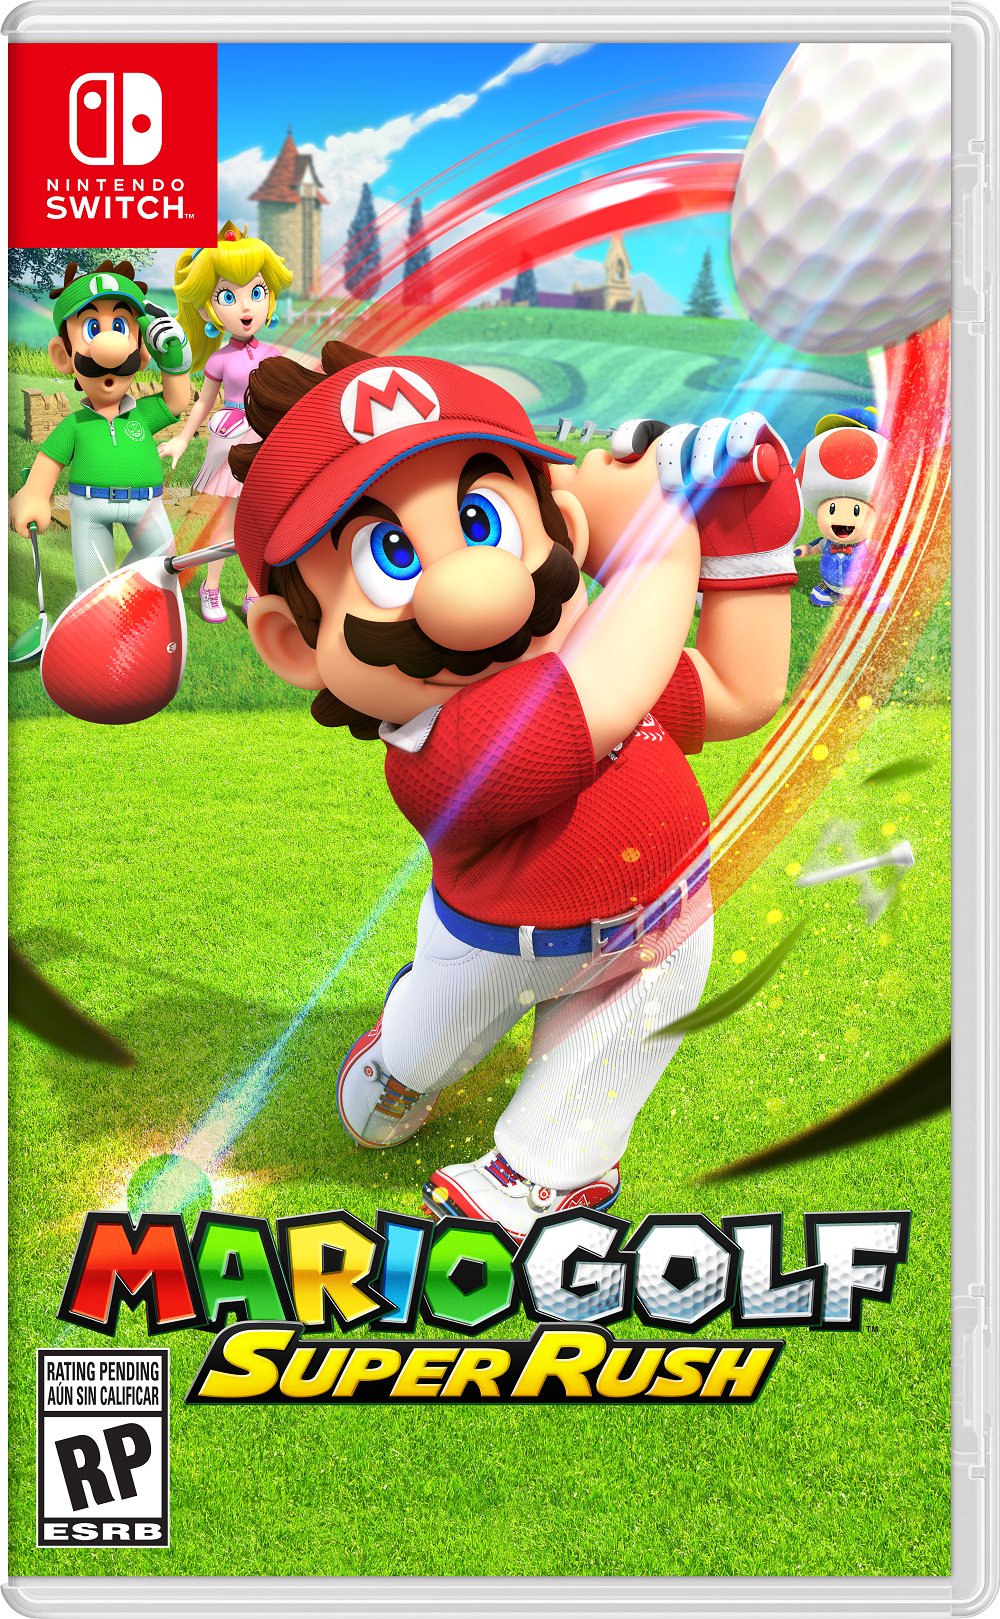 Mario gold super rush Cover Art